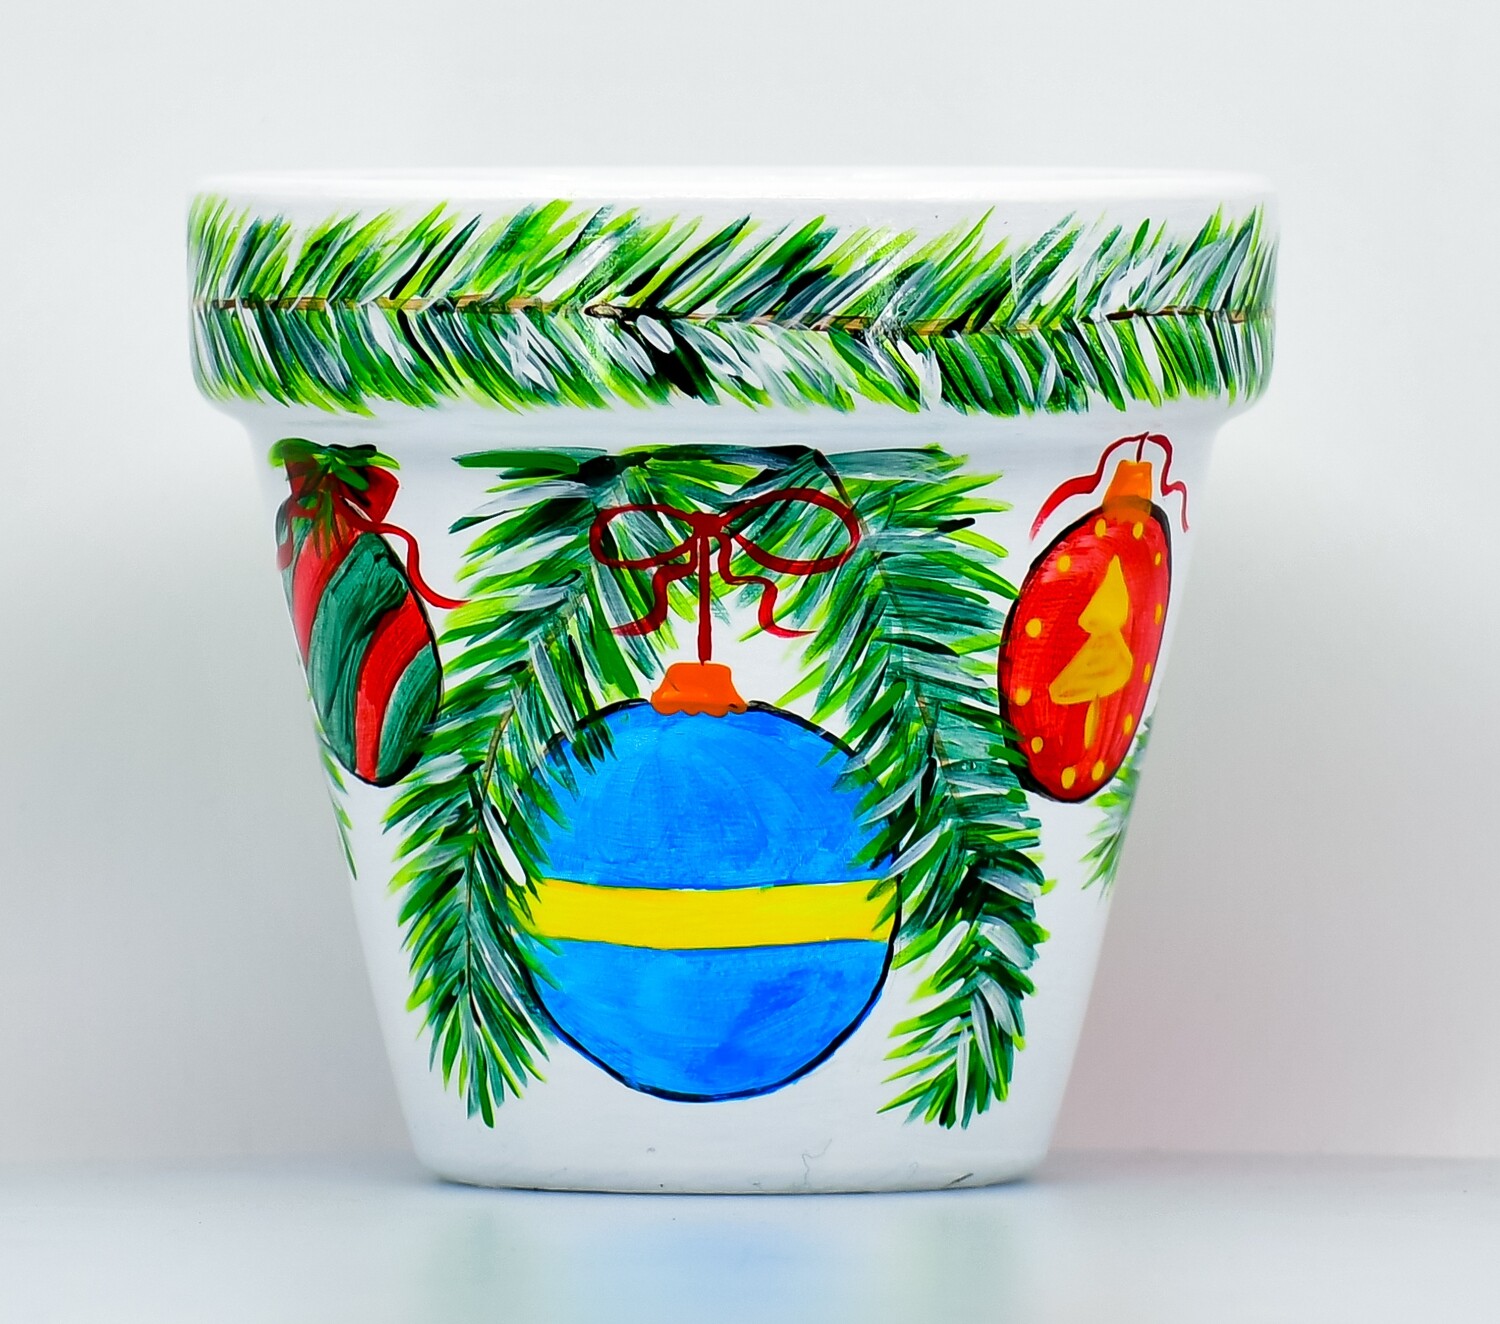 "Decorazioni natalizie" hand painted ceramic planter